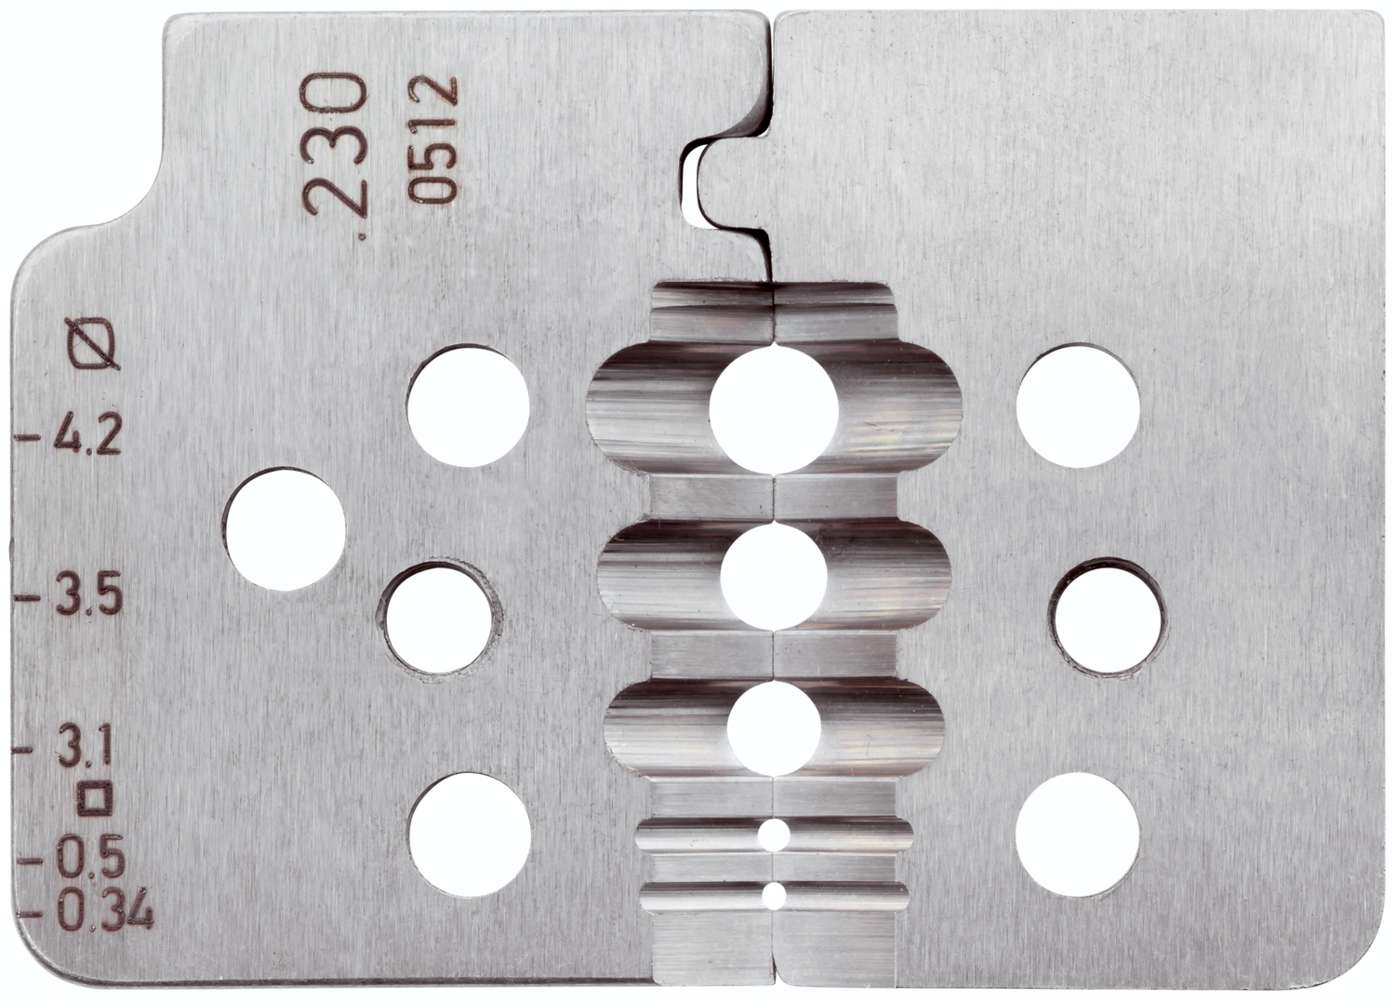 Стриппер для шлангового провода ПВХ 5 гнёзд 0,34 - 4,2 мм² Rennsteig RE-7082303, воронёная сталь - фото